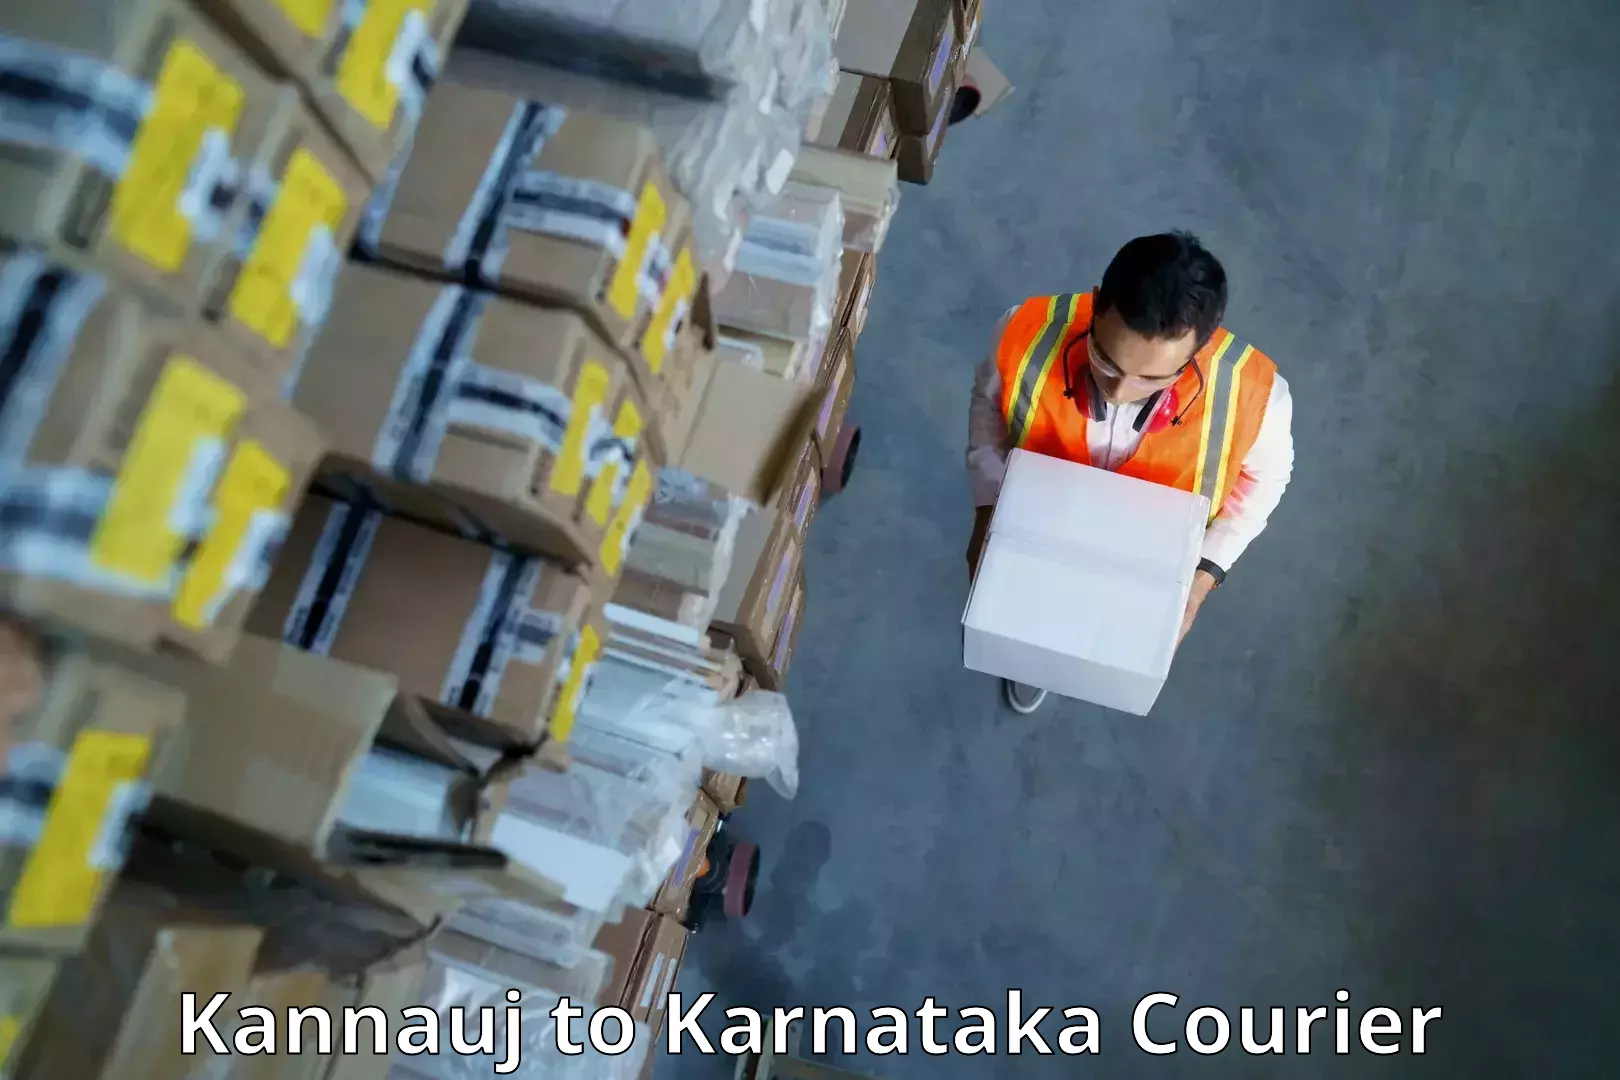 Personalized courier experiences Kannauj to Virajpet